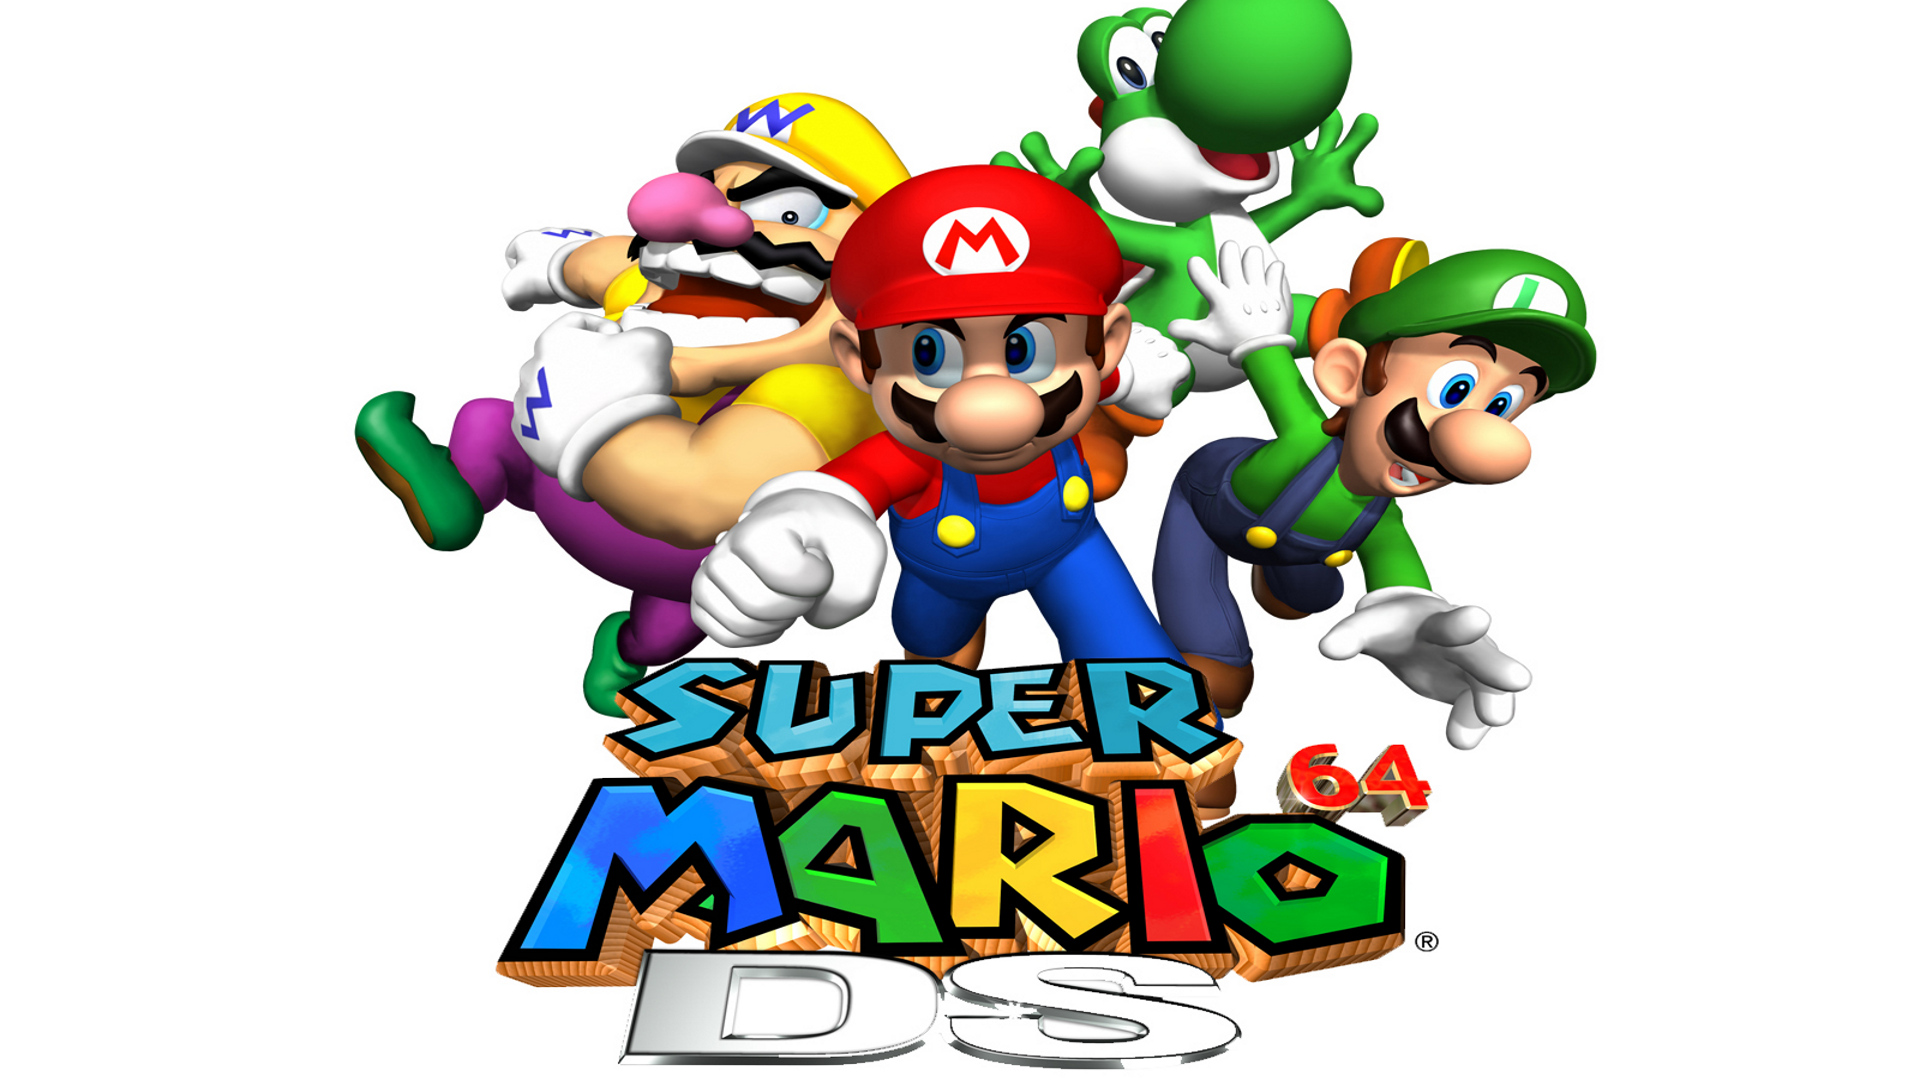 Популярные заставки и фоны Супер Марио 64 Дс на компьютер